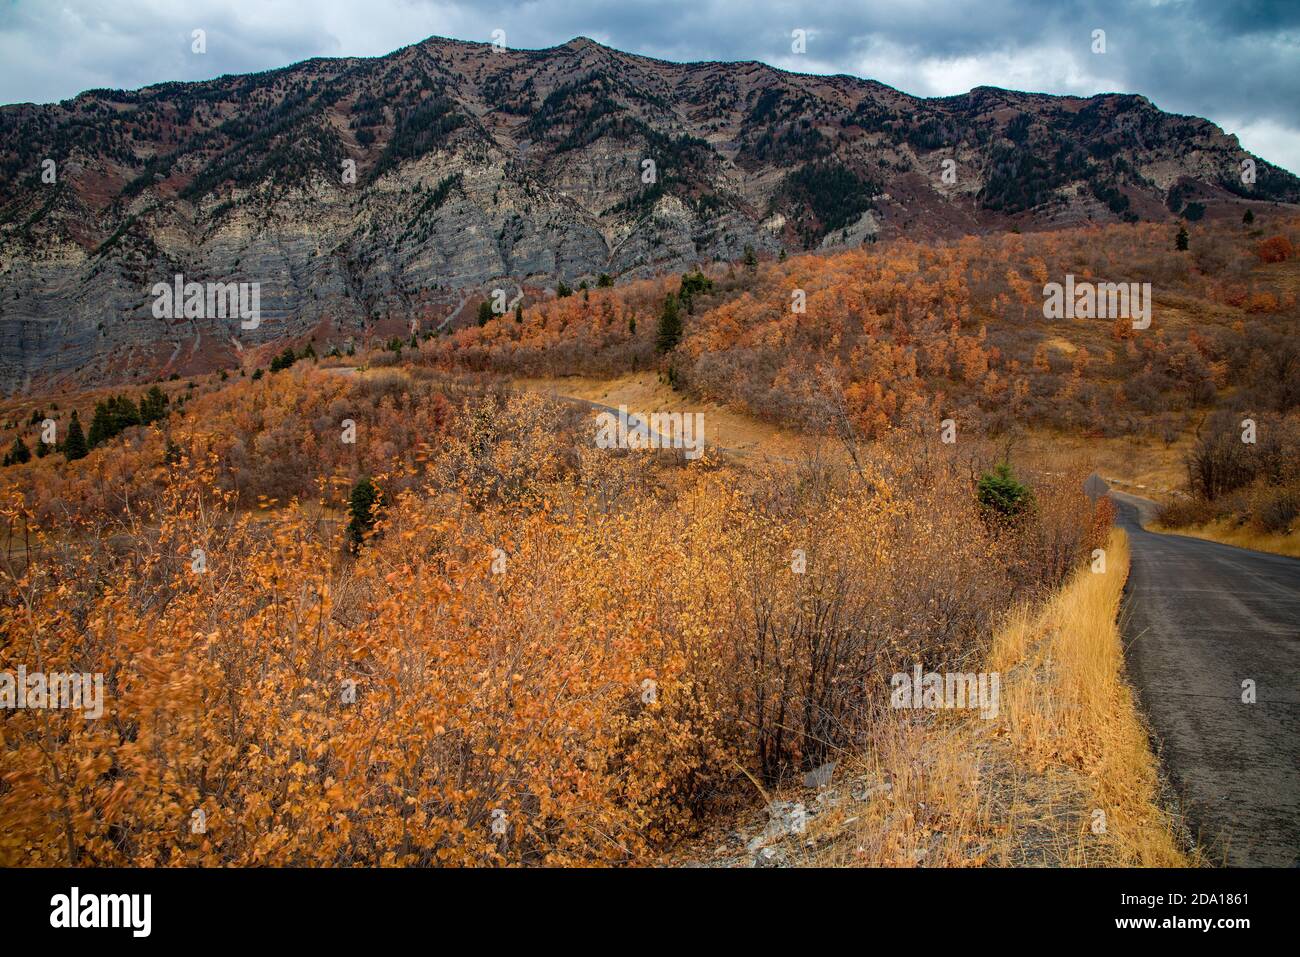 Le alte vette di granito e le scogliere dello Utah settentrionale, USA, sono spettacolari in autunno. La strada di montagna offre infinite vedute panoramiche della catena montuosa. Foto Stock